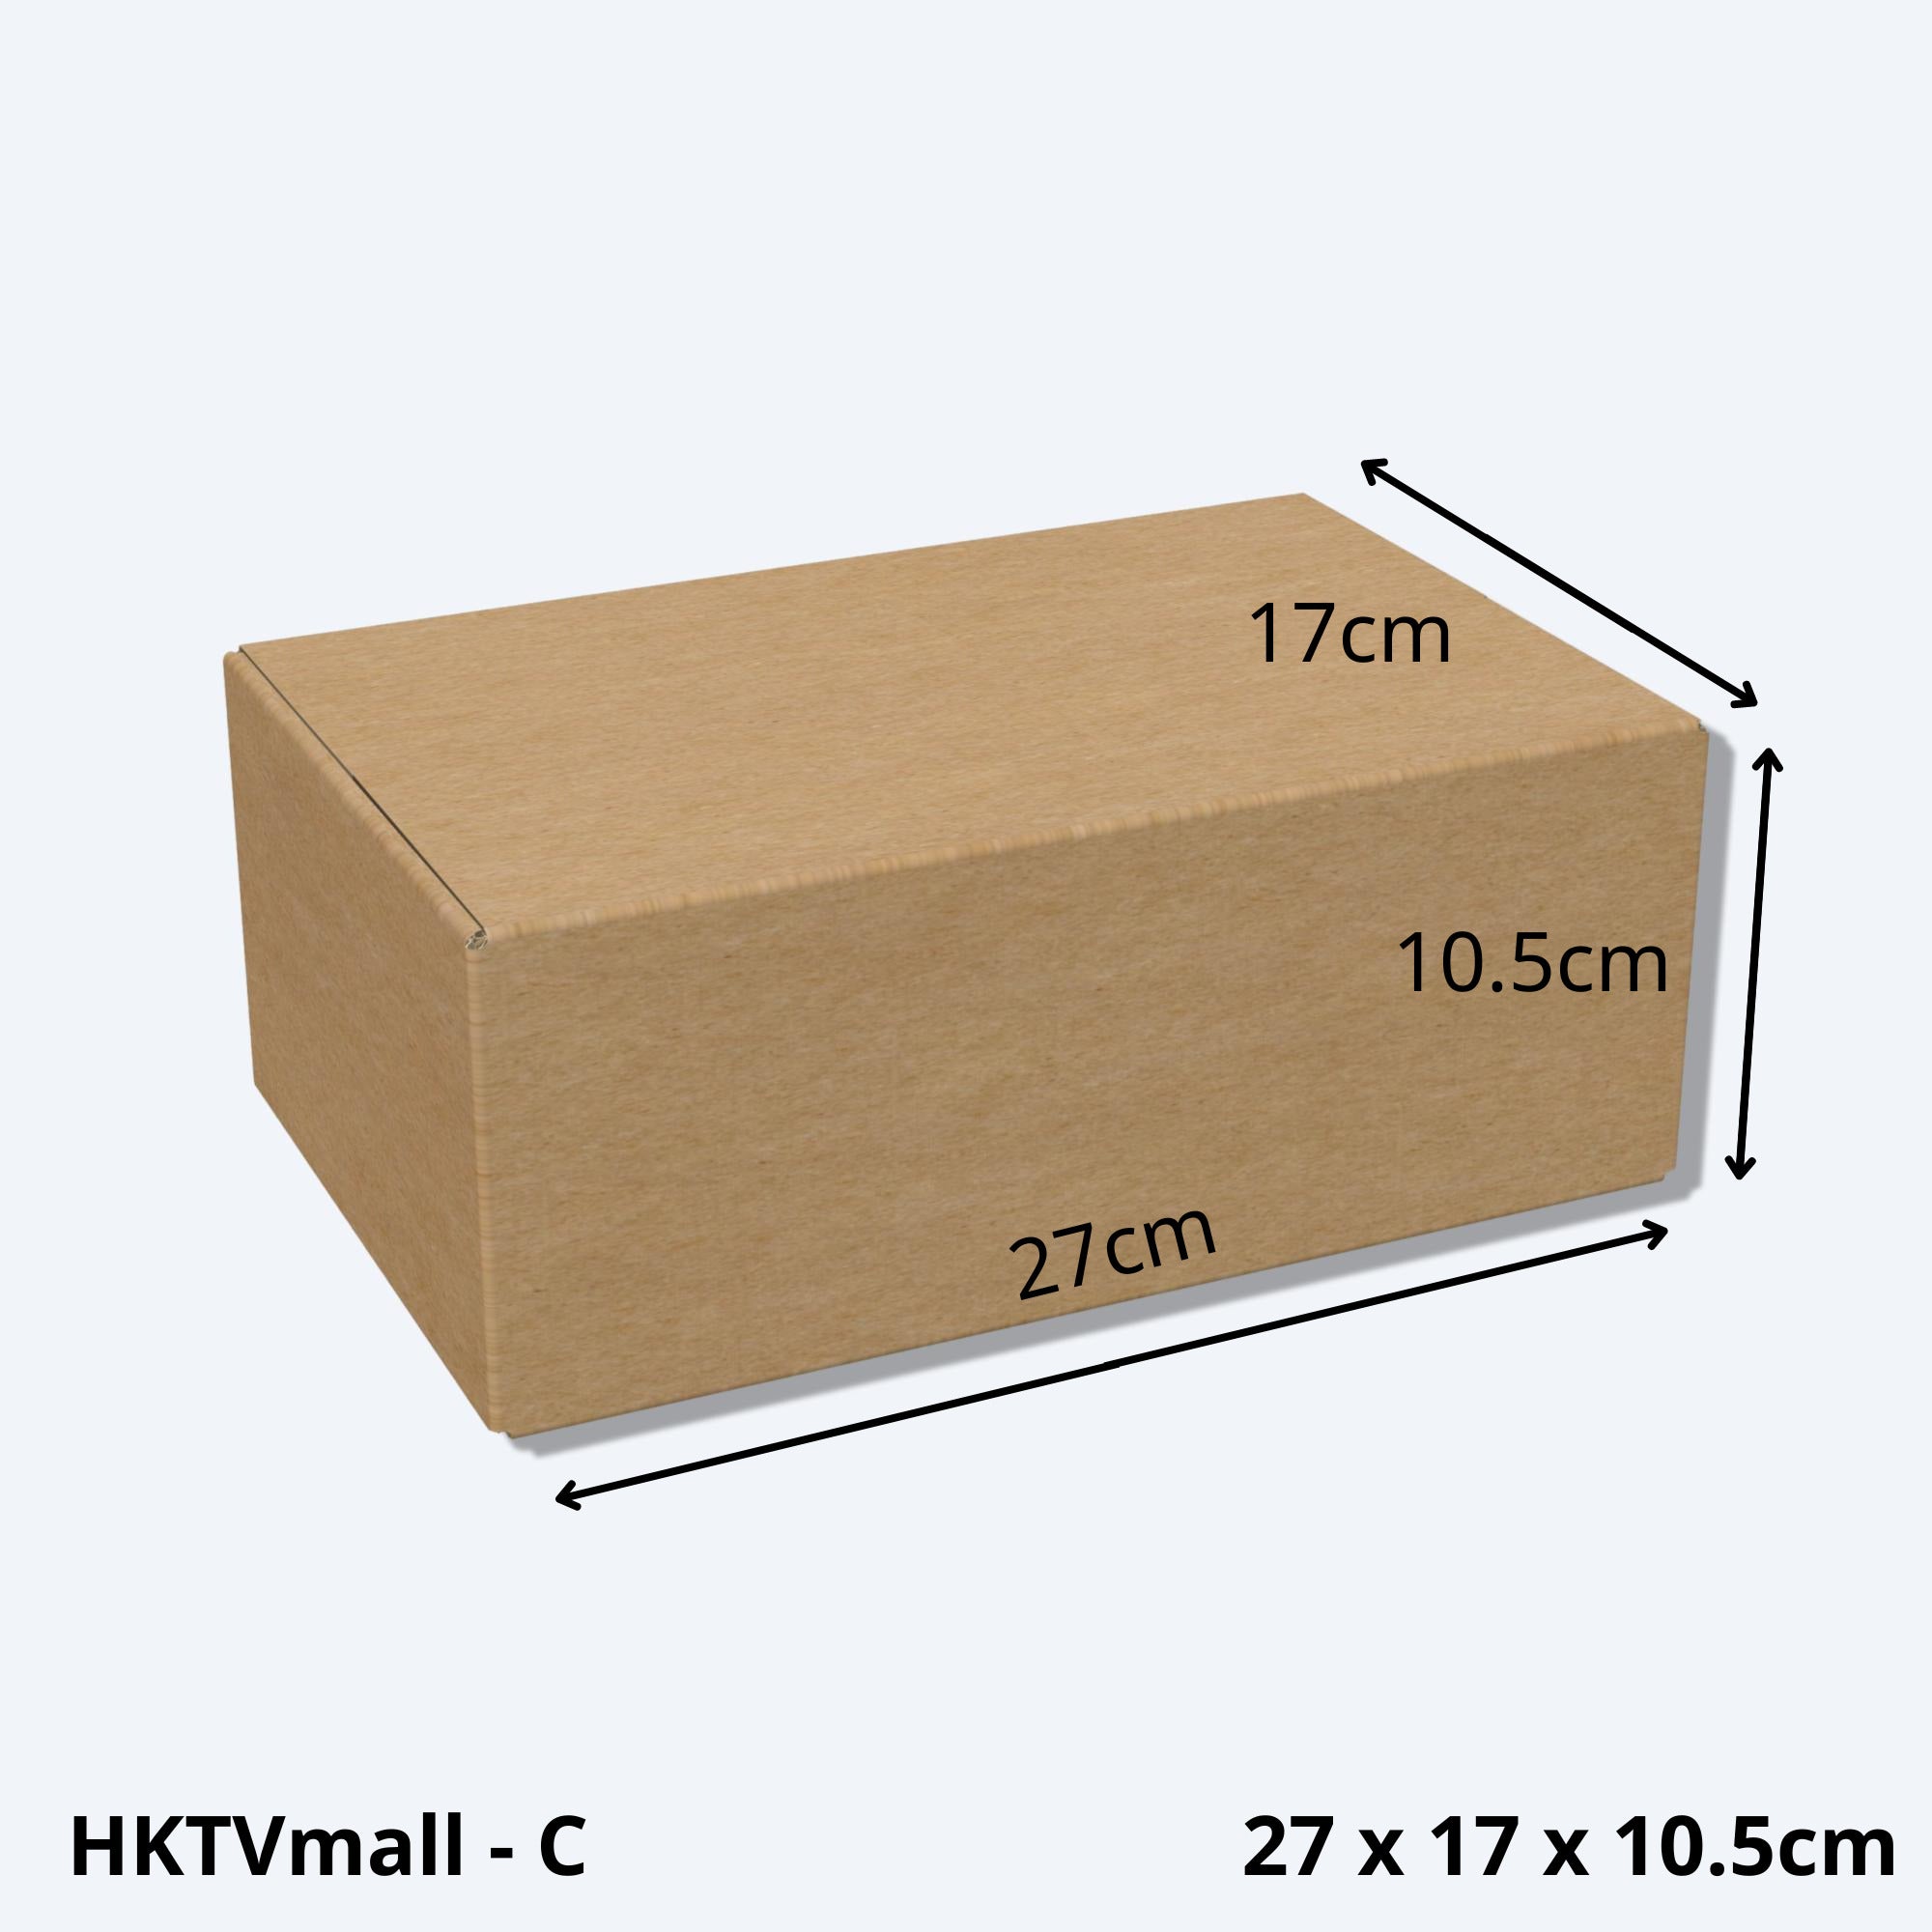 堅固的HKTVMALL尺寸C的紙箱尺寸圖，這款中型紙皮箱專為HKTV物流部設計，適用於HKTVmall商戶發貨時使用。